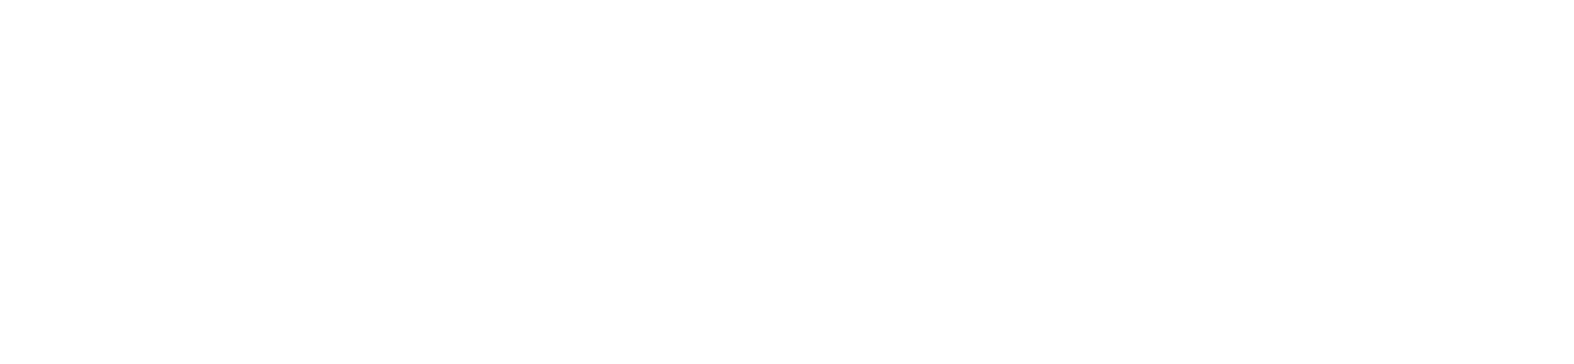 Pepsico logo grand pour les fonds sombres (PNG transparent)